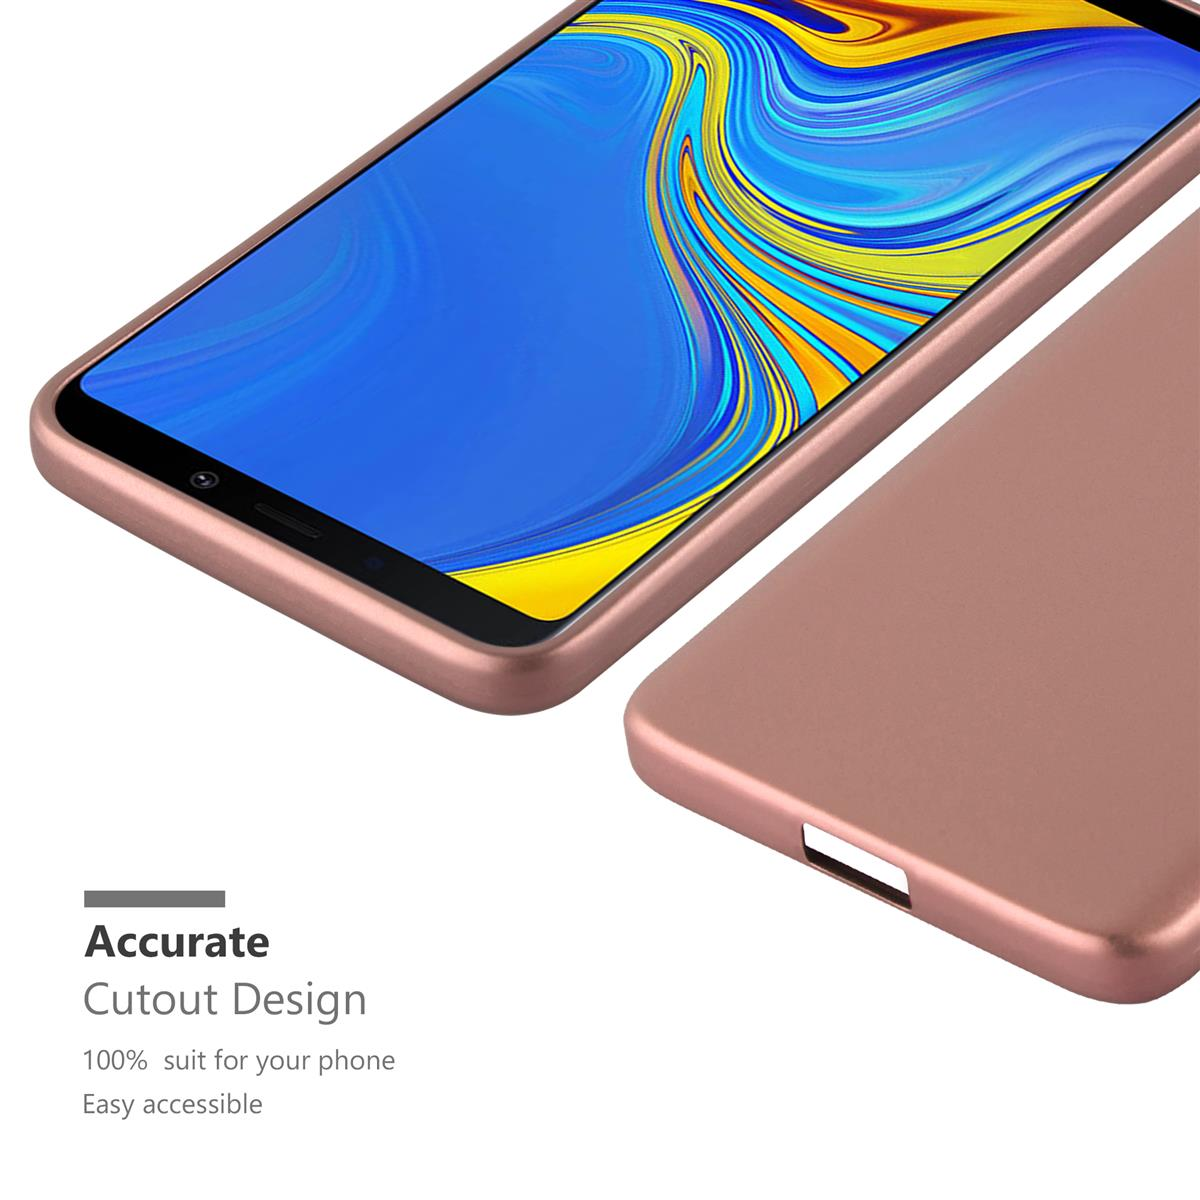 Backcover, A9 Galaxy METALLIC ROSÉ Metallic TPU Samsung, Hülle, Matt CADORABO GOLD 2018,